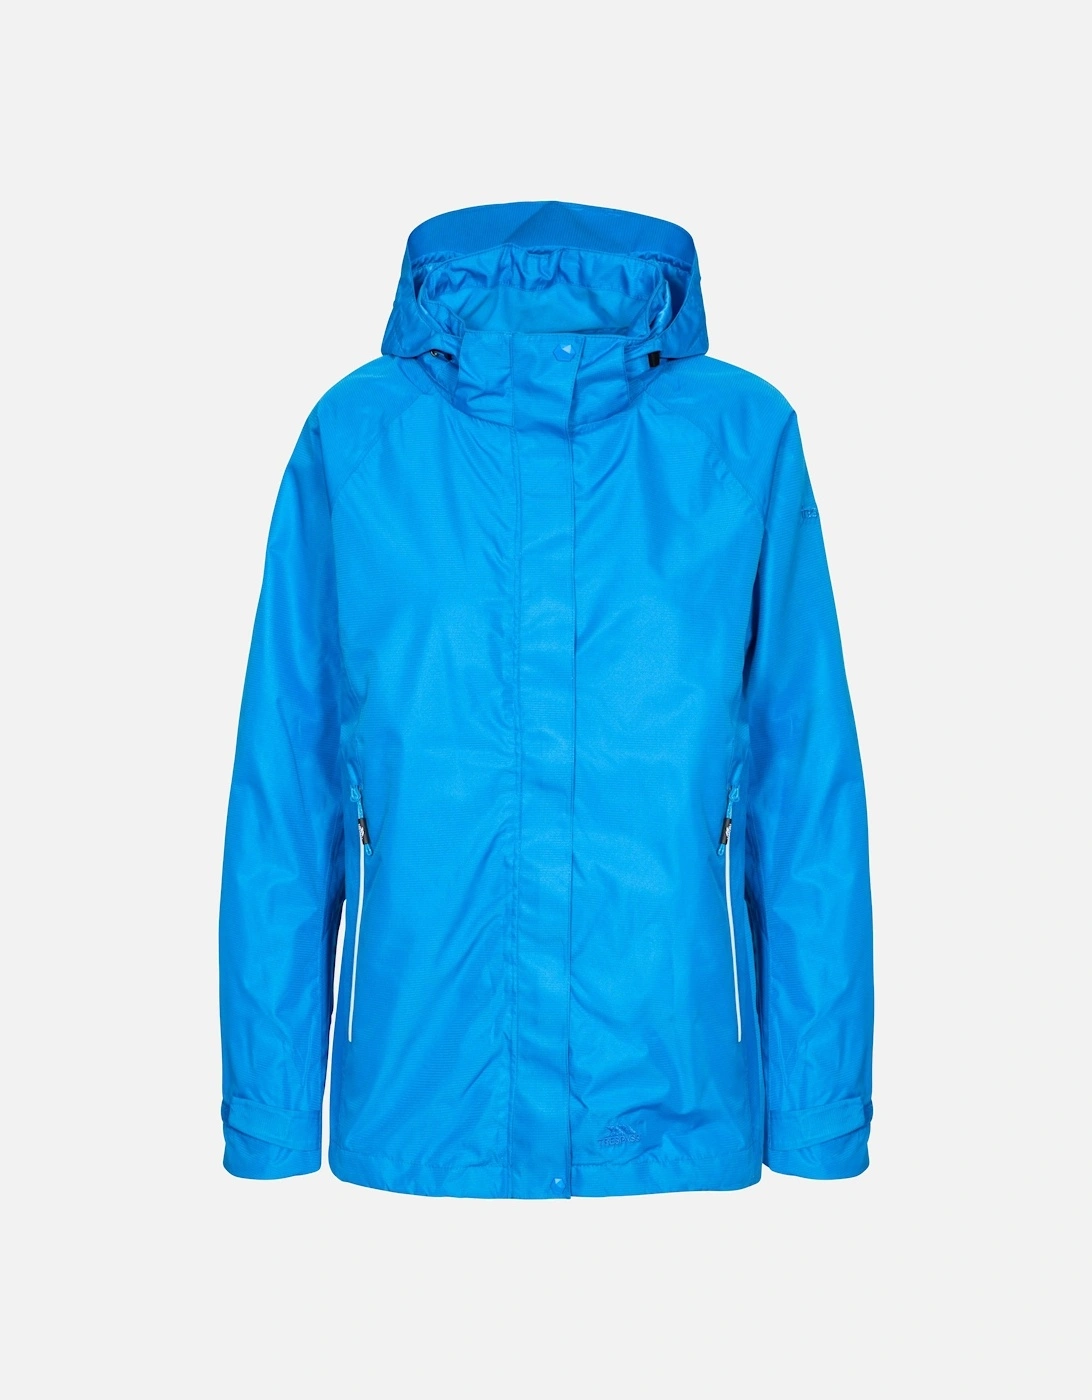 Womens/Ladies Review Waterproof Jacket, 6 of 5